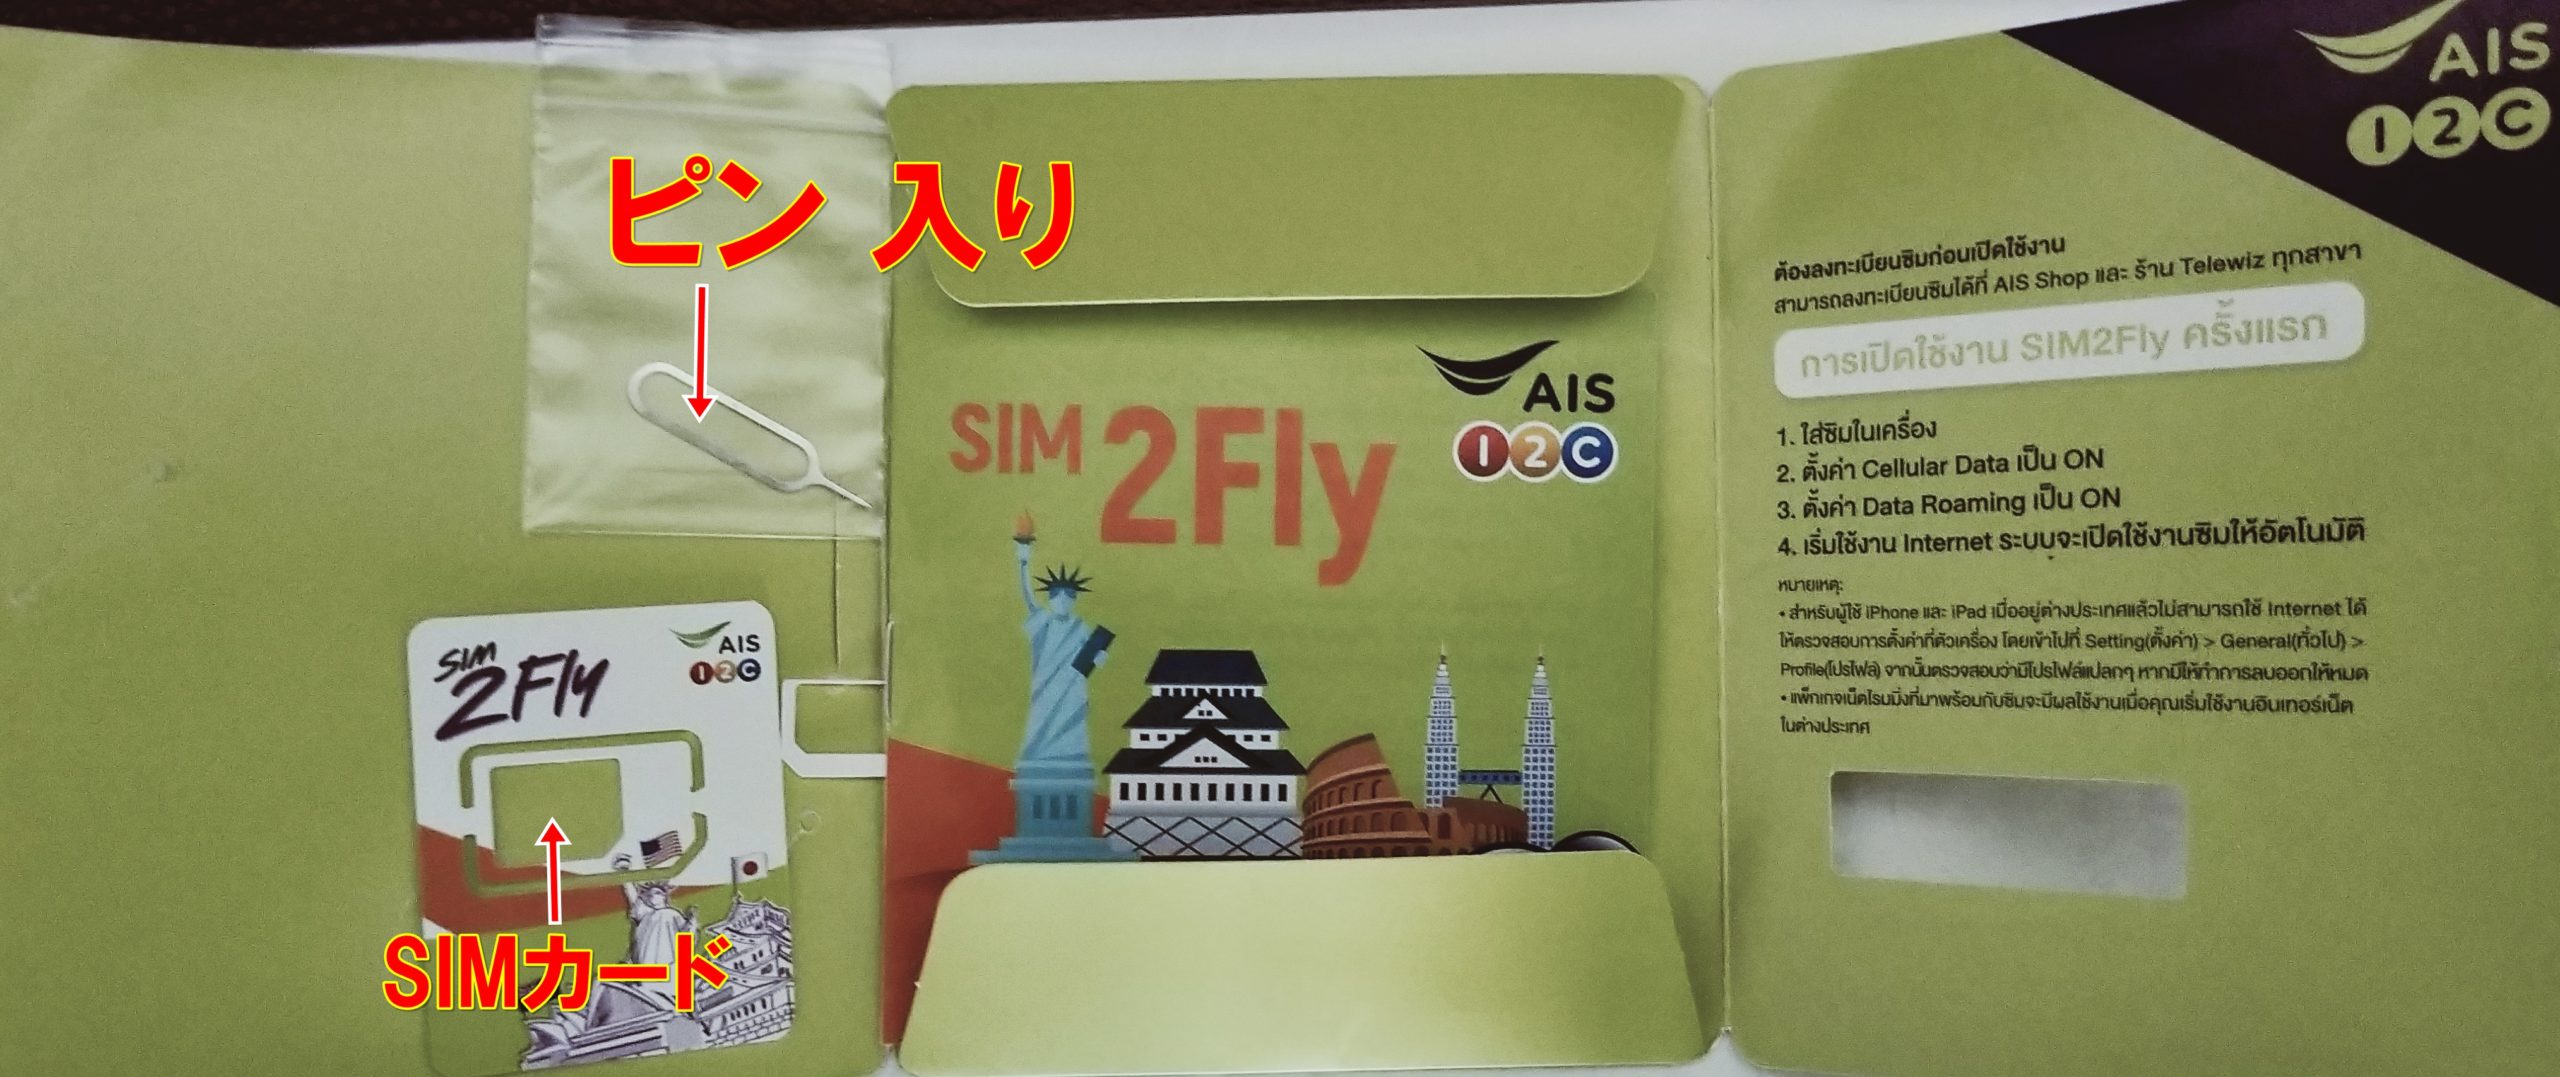 AIS-SIM-2FIiy